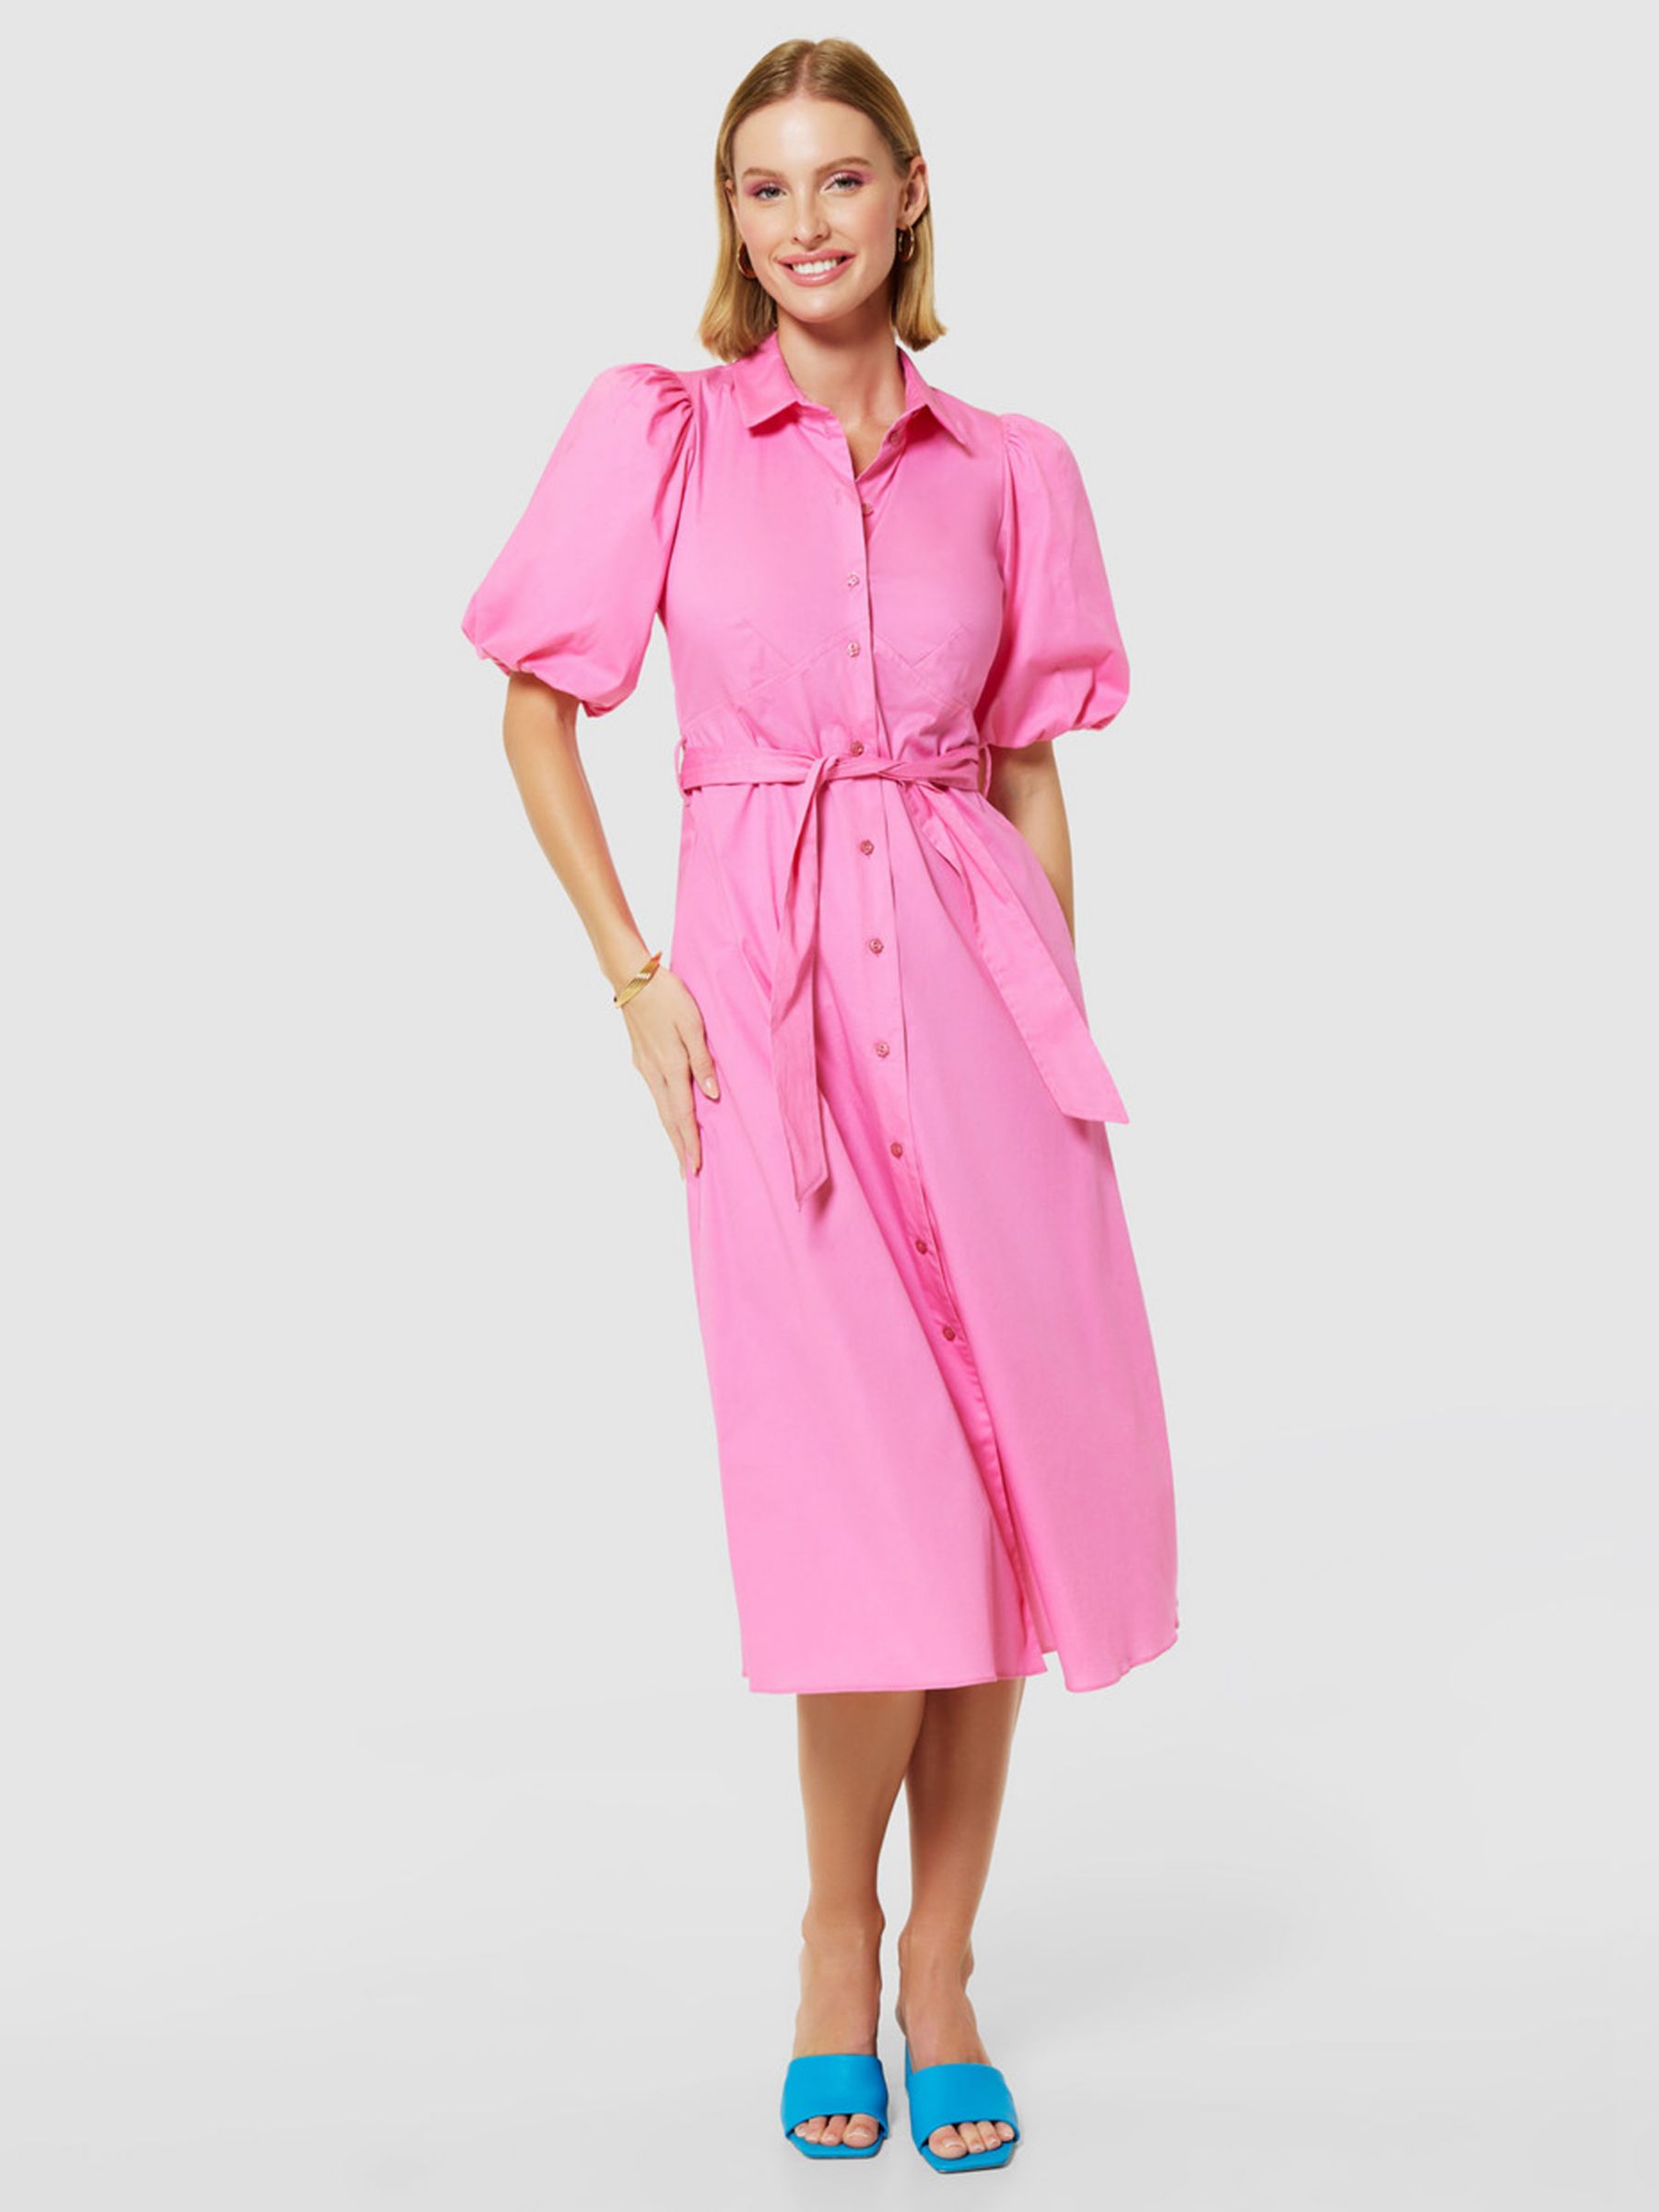 Closet London A-Line Tie Waist Shirt Dress, Pink, 8